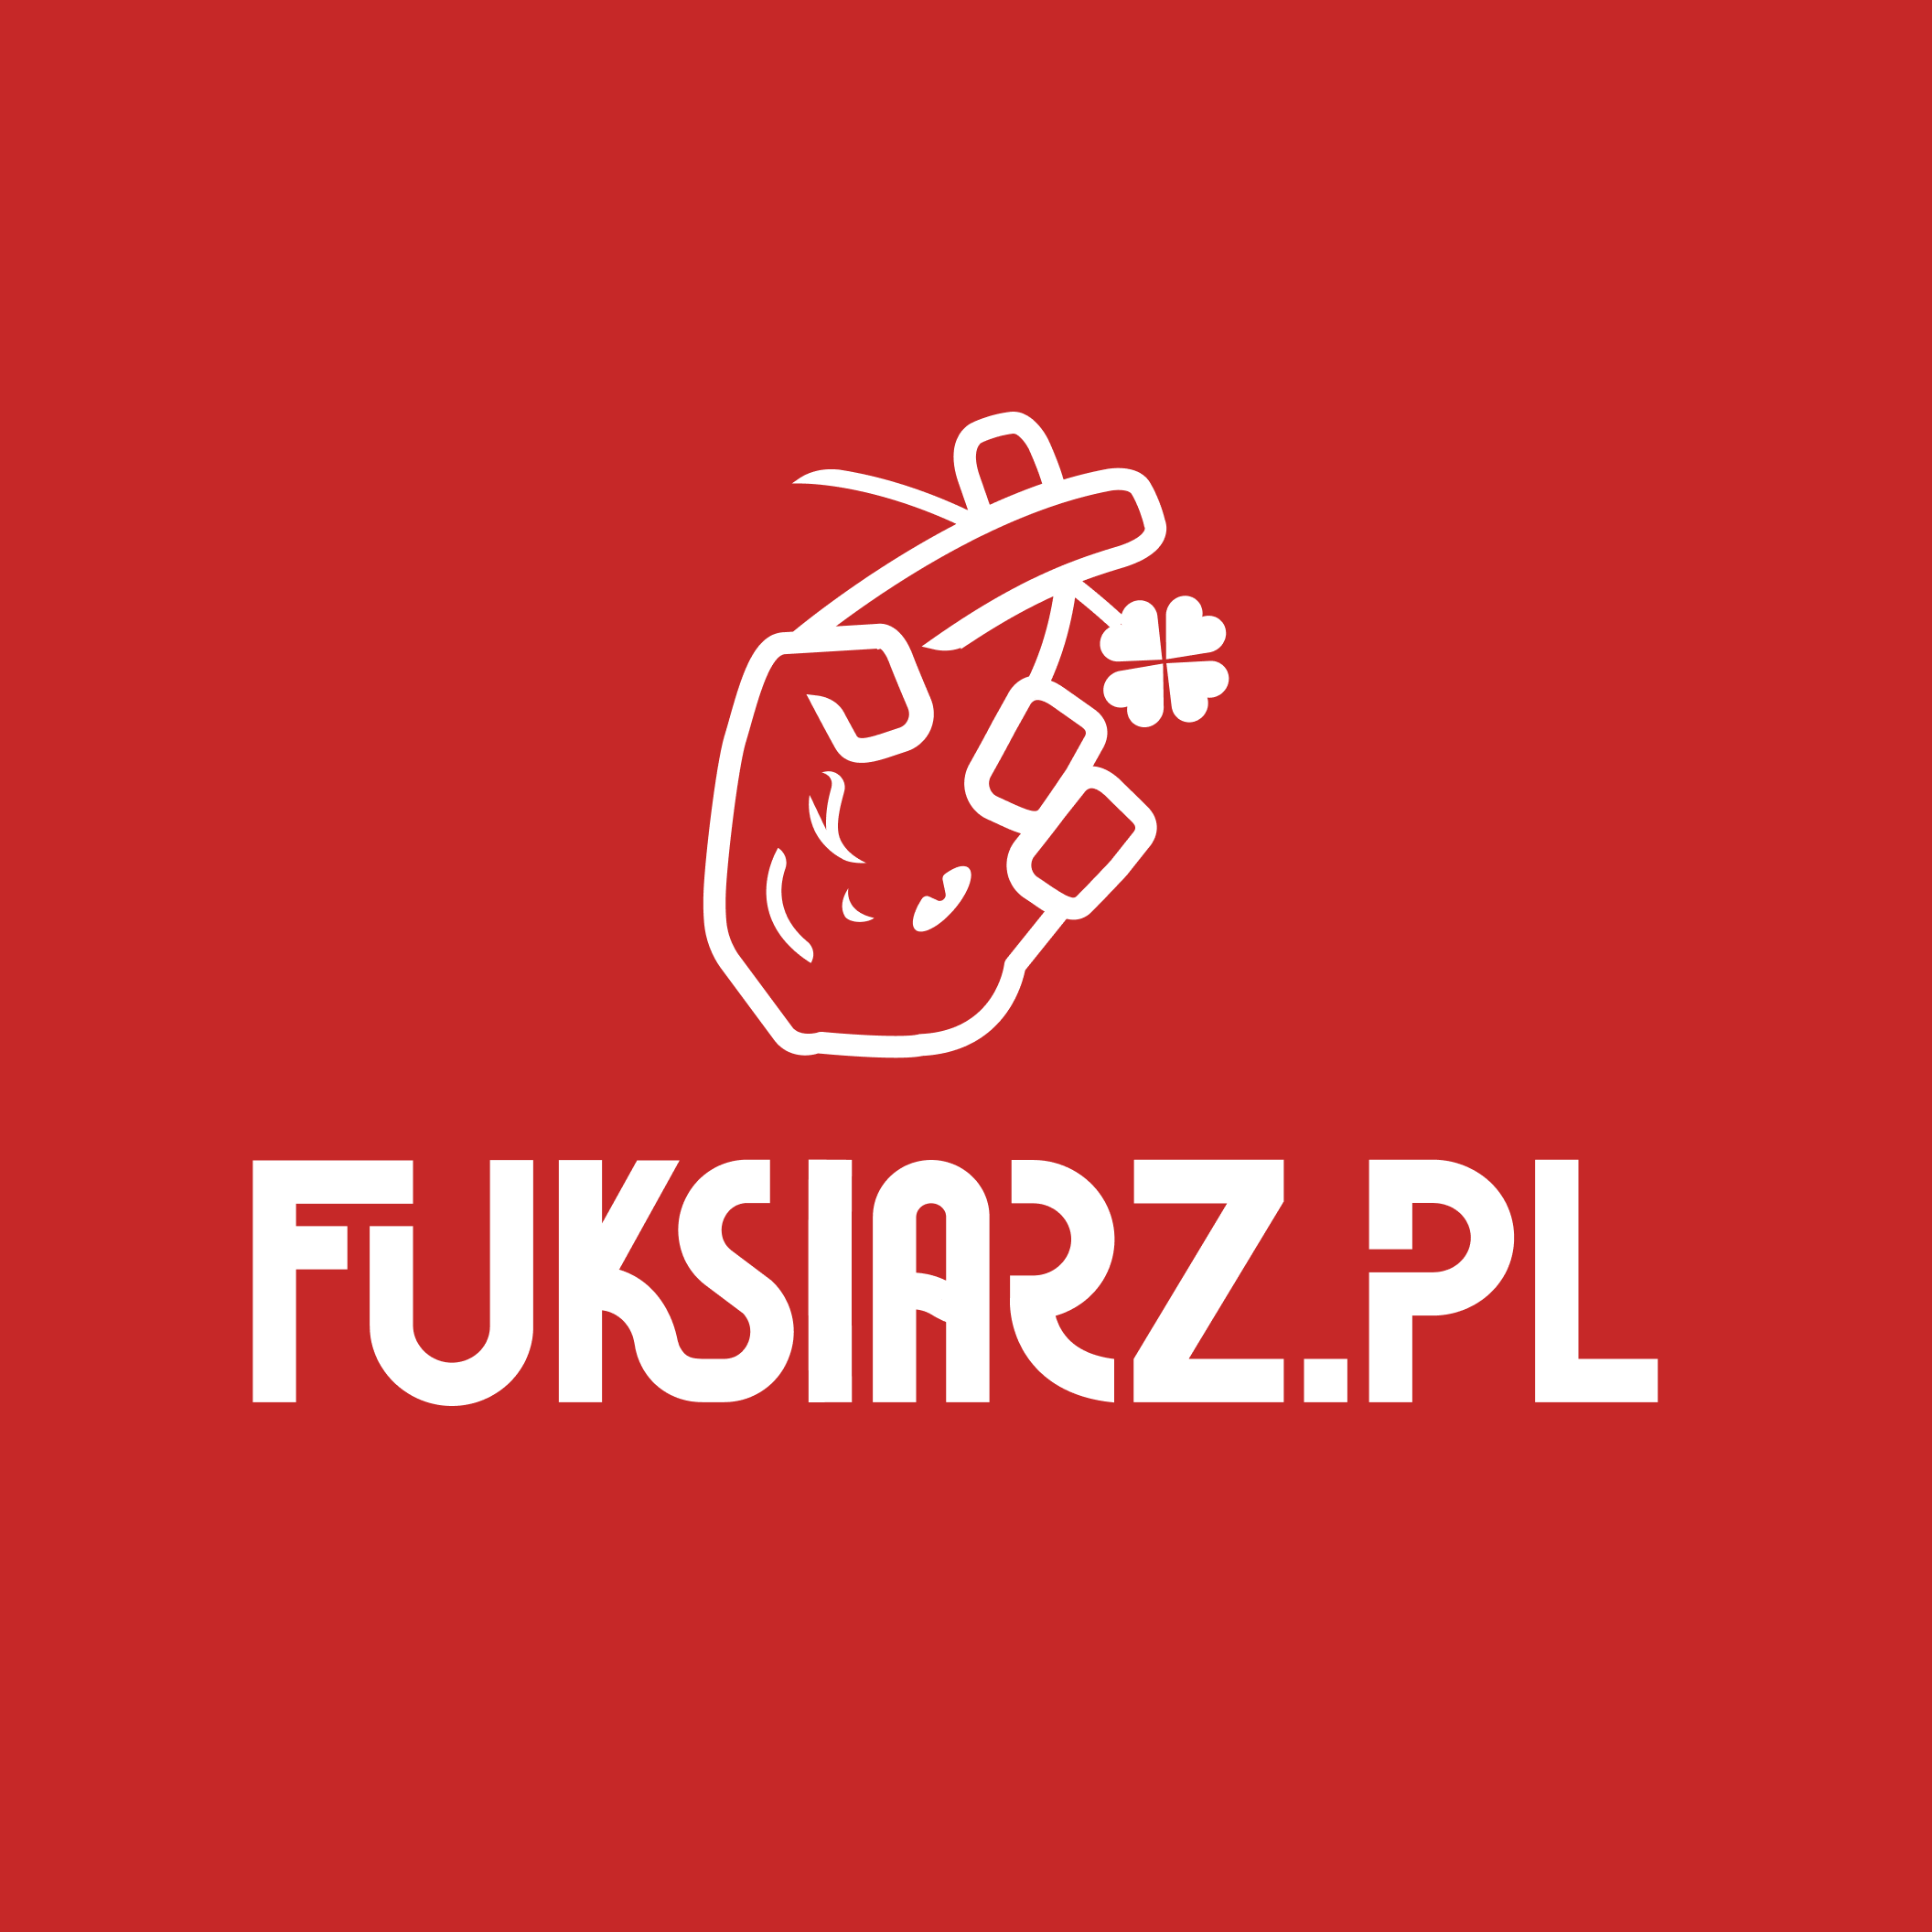 Fuksiarz - redaktor fuksiarza